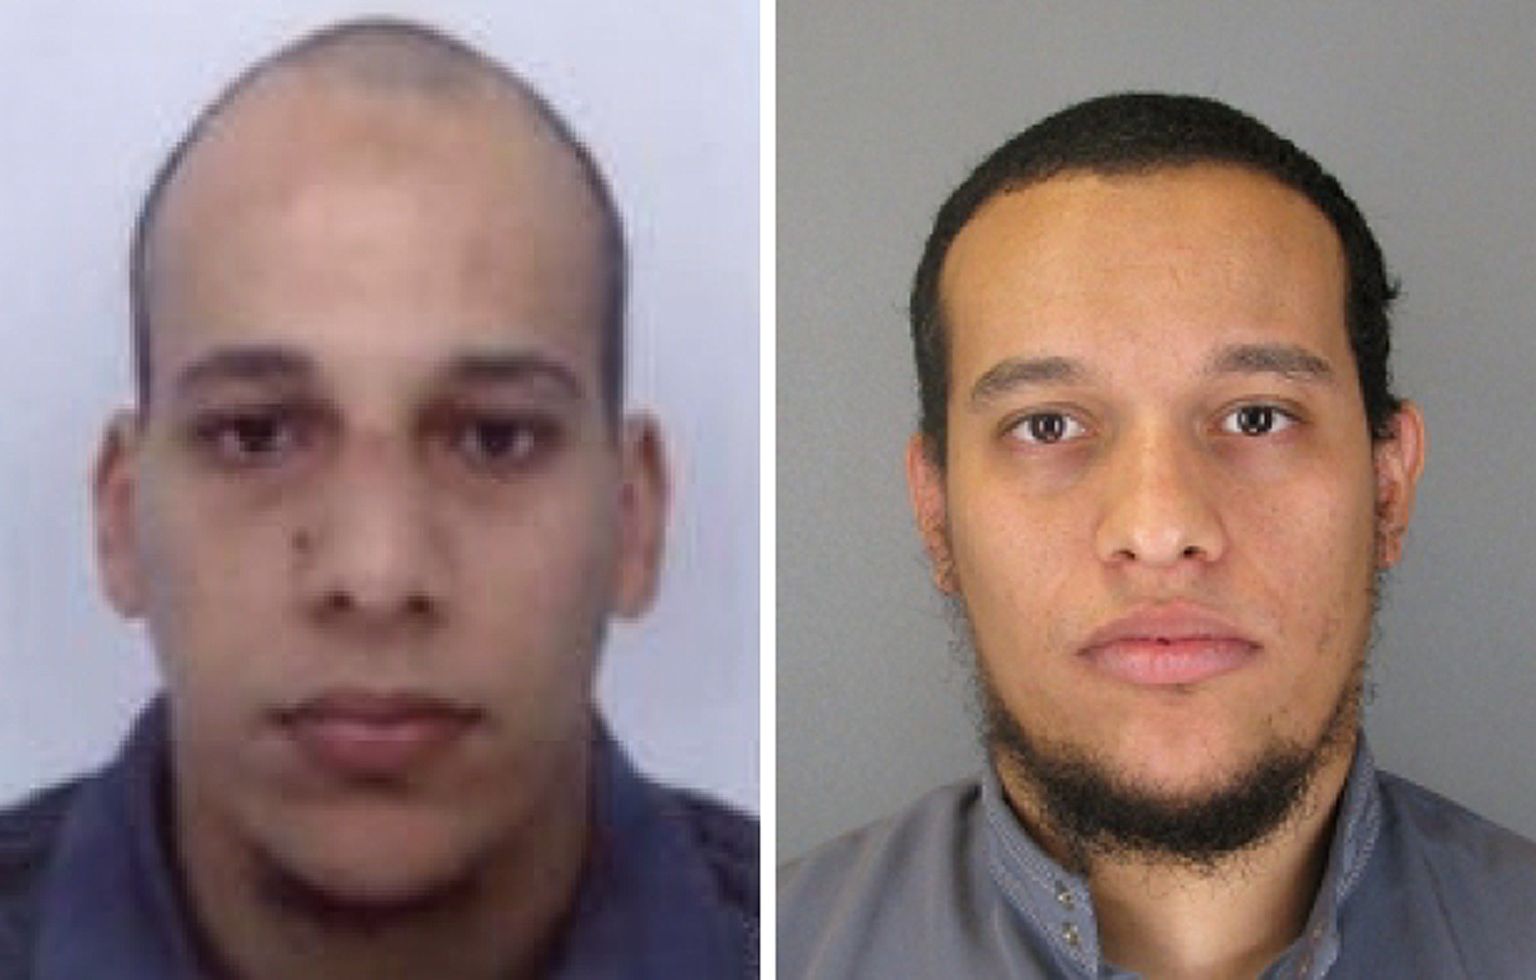 Prantsuse politsei avaldas täna hommikul fotod kahtlusalustest vendadest: vasakul Chérif Kouachi (32) ja paremal Said Kouachi (34).